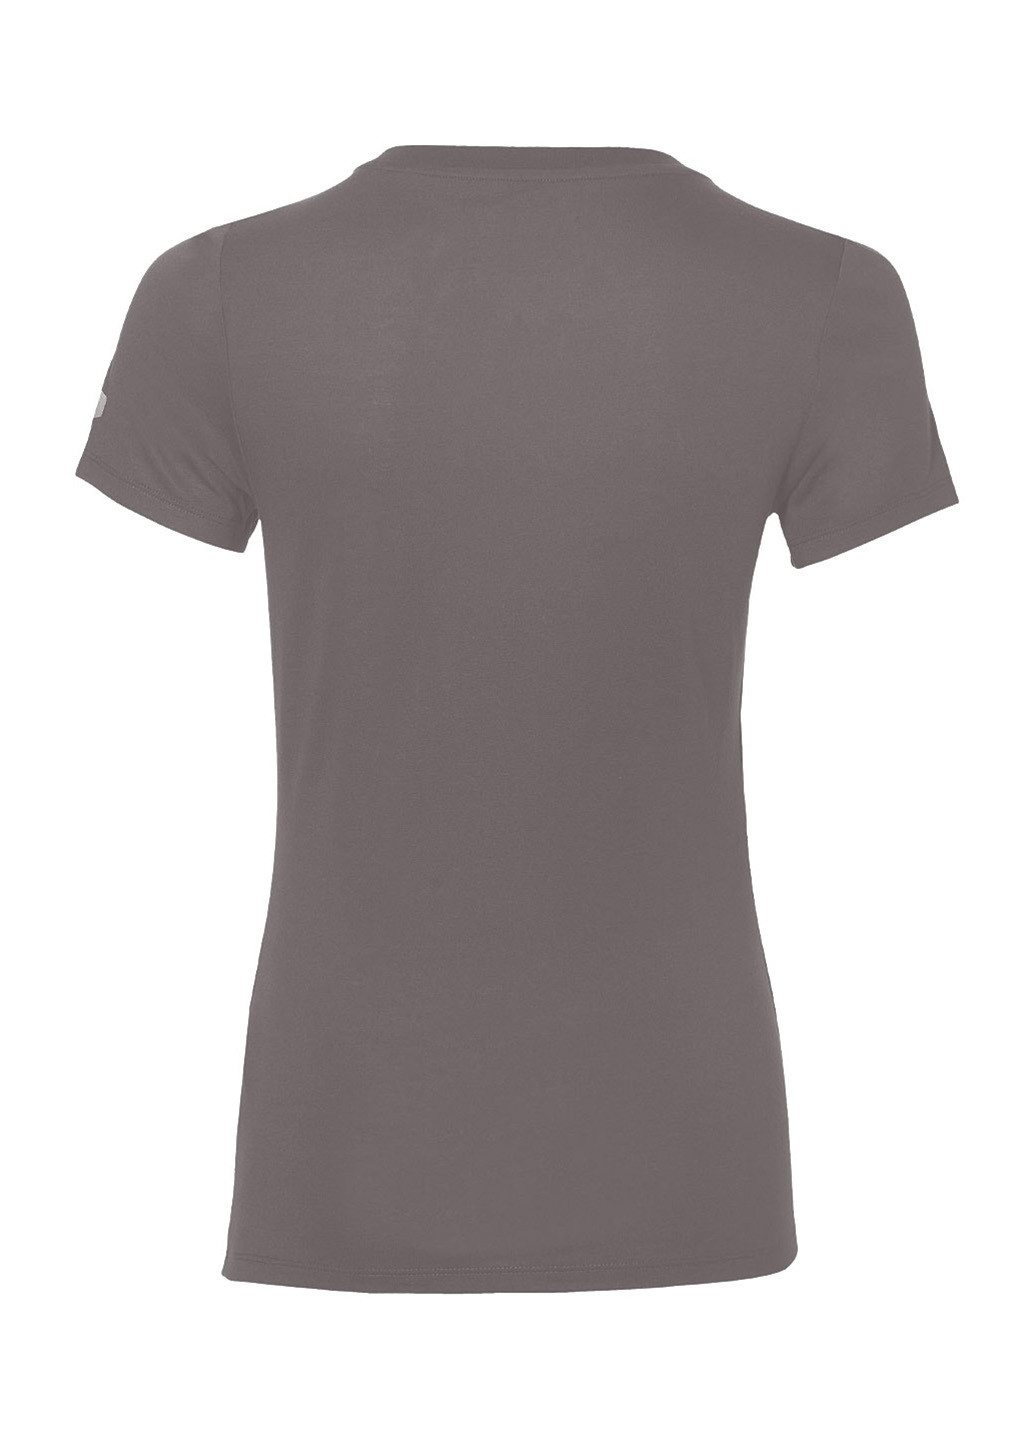 Грифельно-серая летняя футболка с коротким рукавом Asics